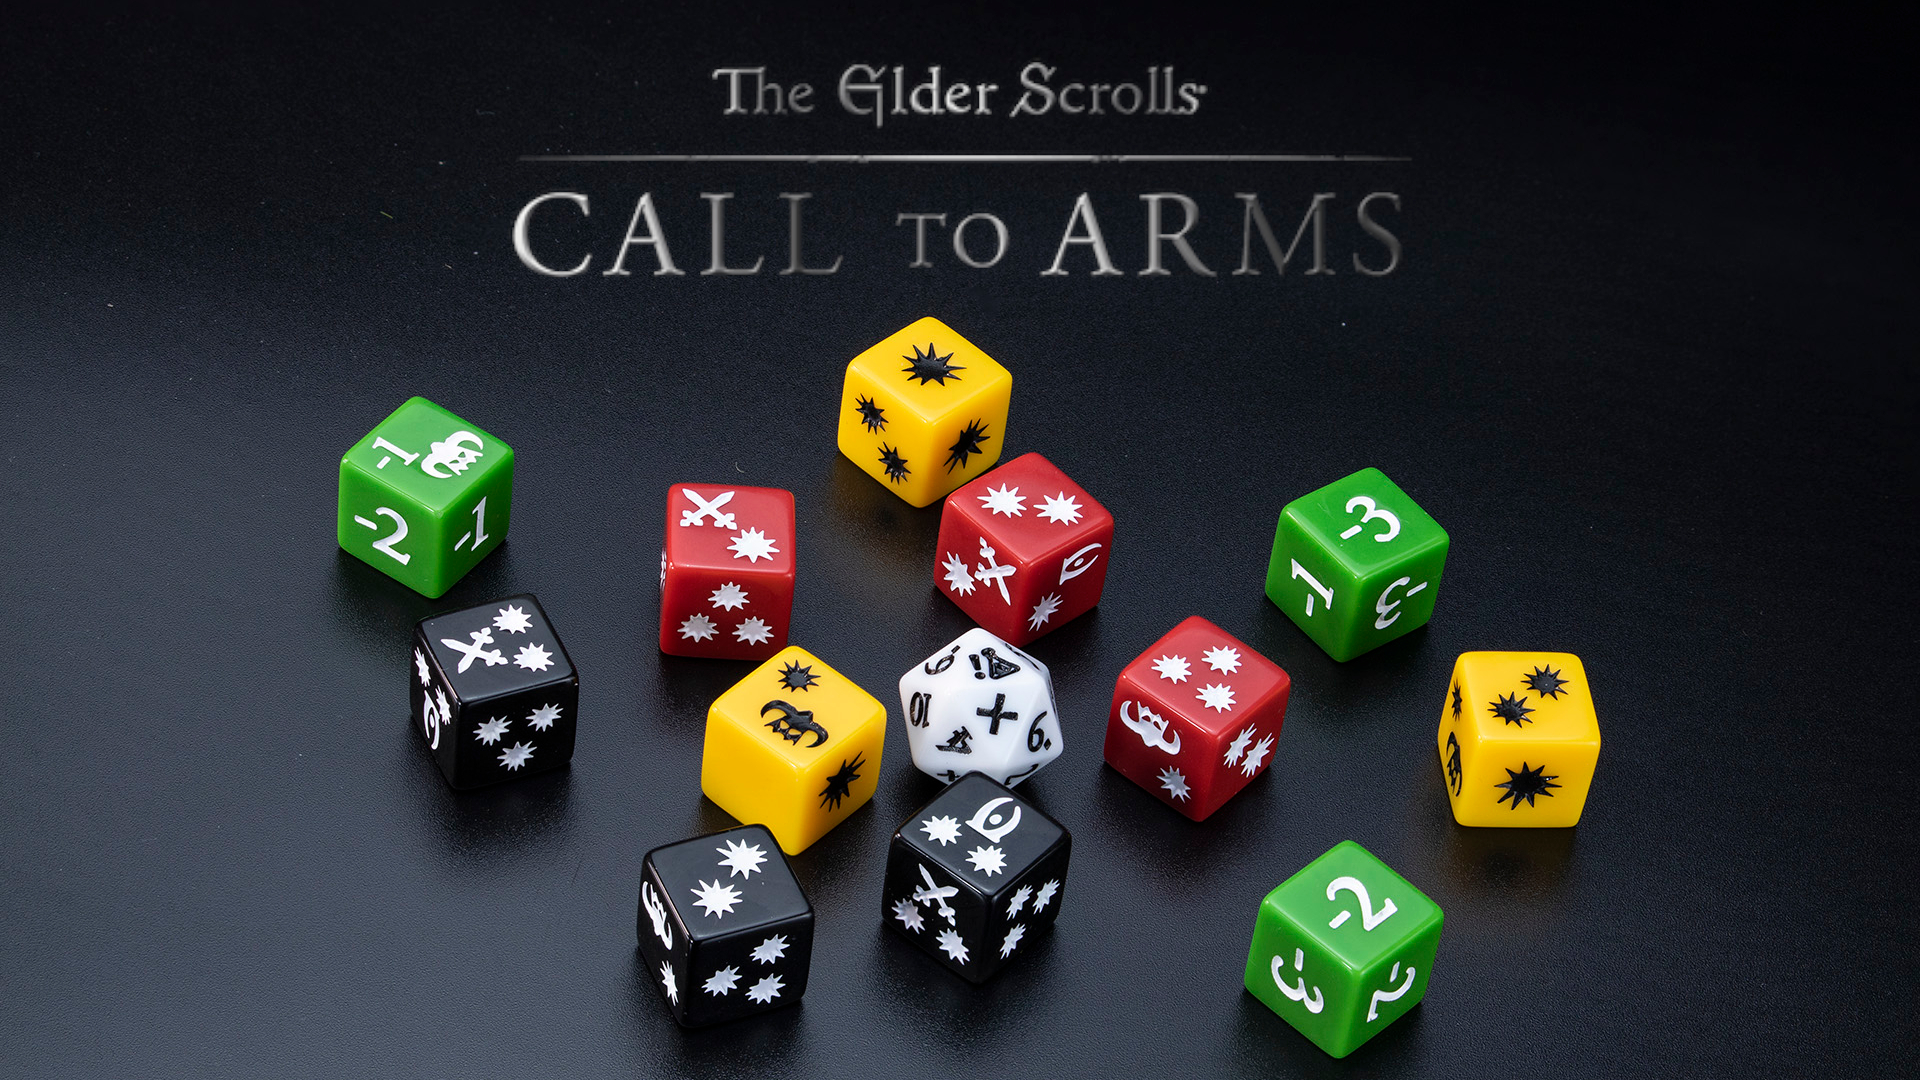 Elder Scrolls Call to Arms portada